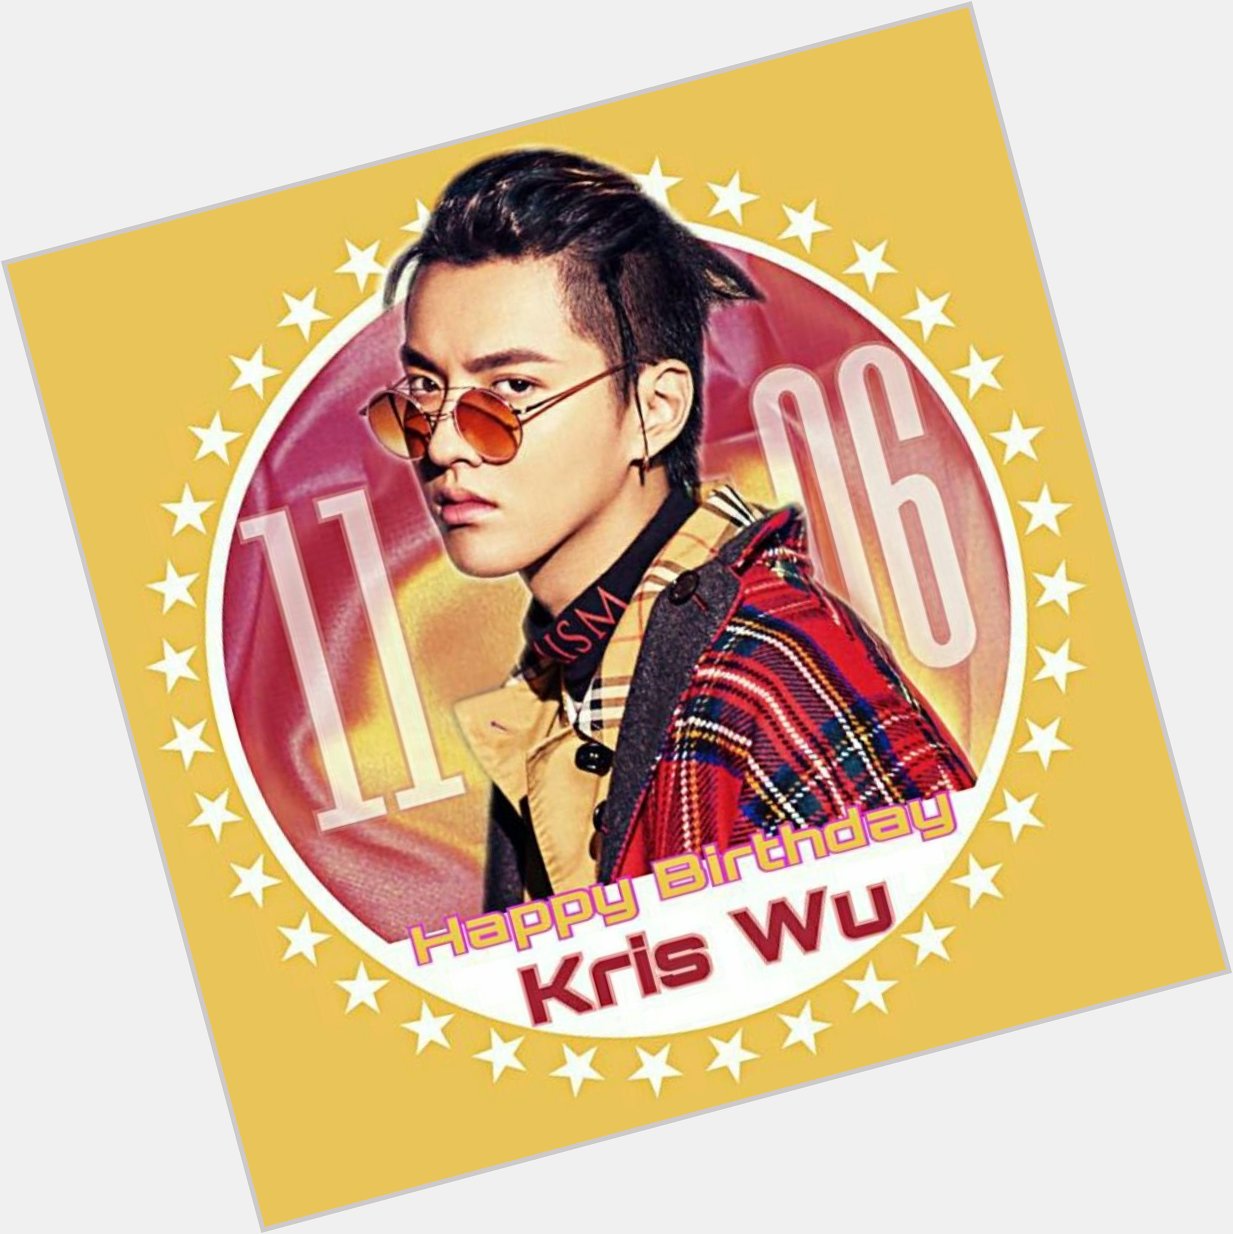 1106     happy birthday to Kris Wu 